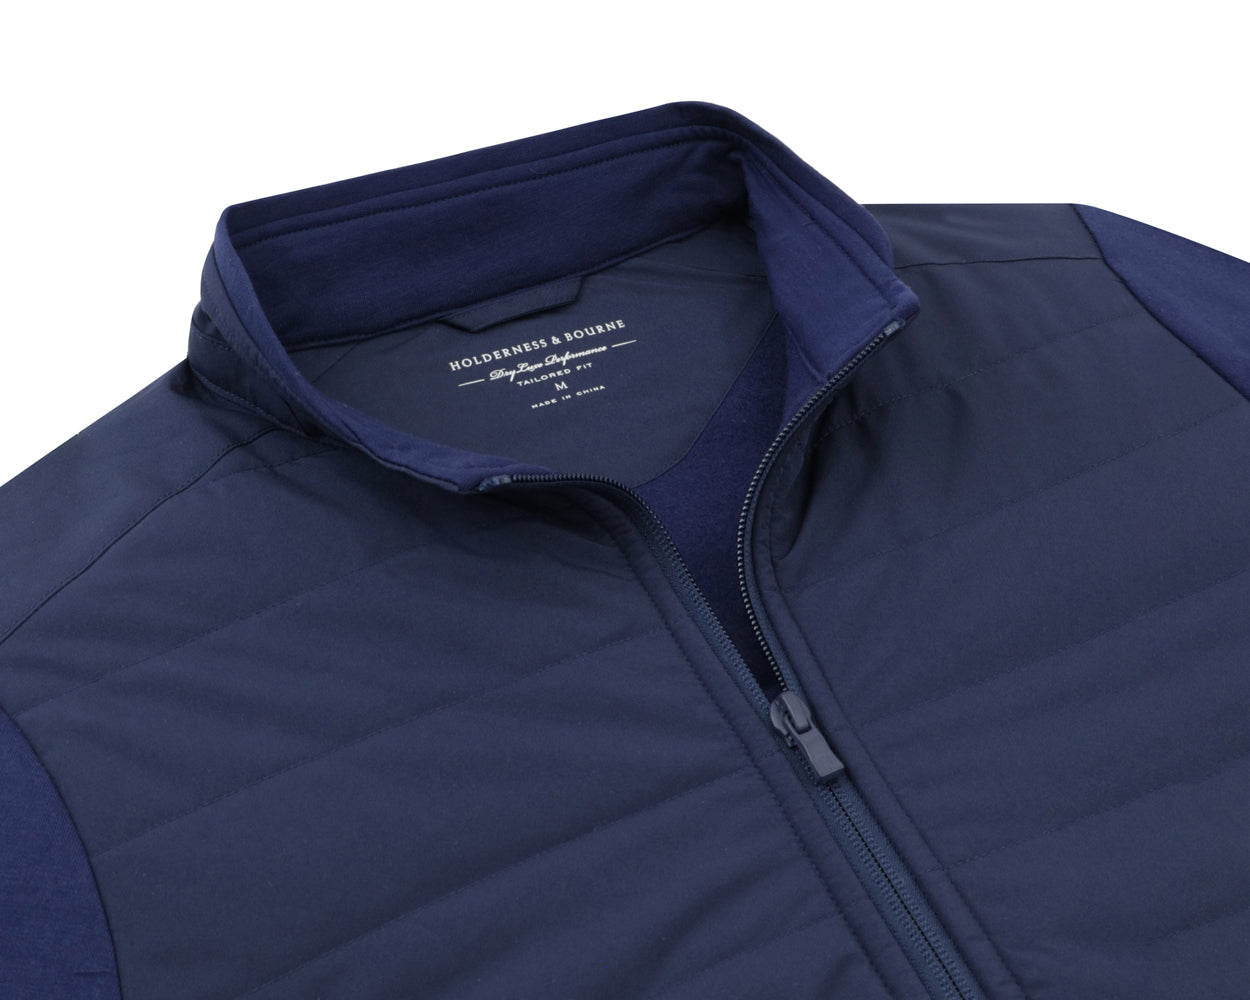 Men's Navy Blue Golf Jacket | Holderness & Bourne